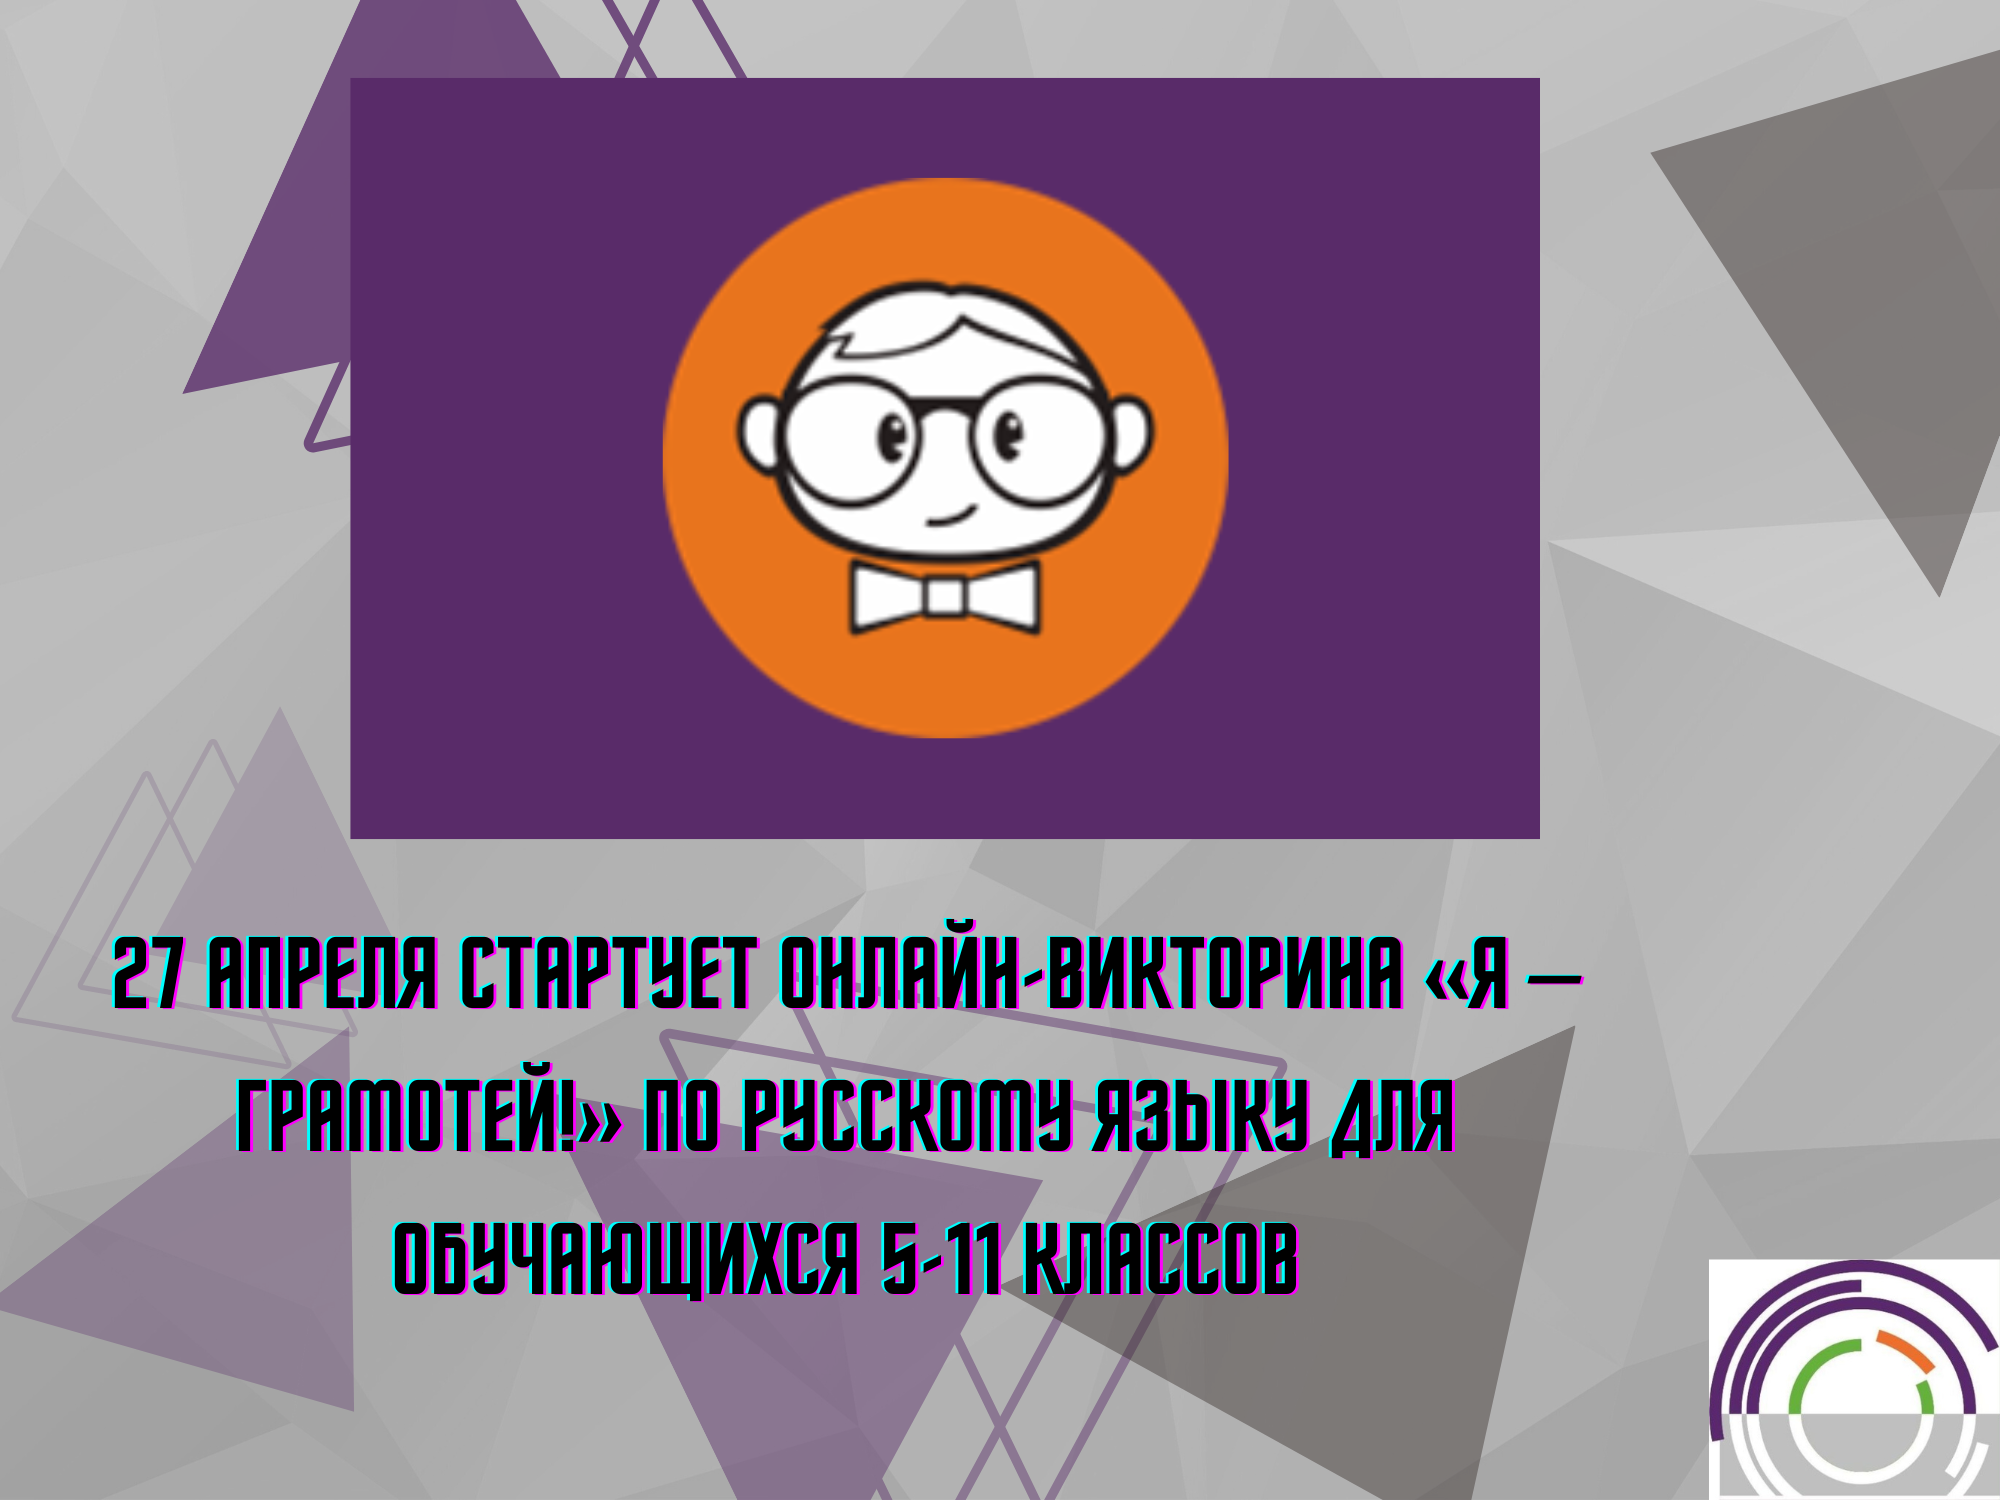 27 апреля стартует онлайн-викторина «Я – грамотей!»  по русскому языку для обучающихся 5-11 классов